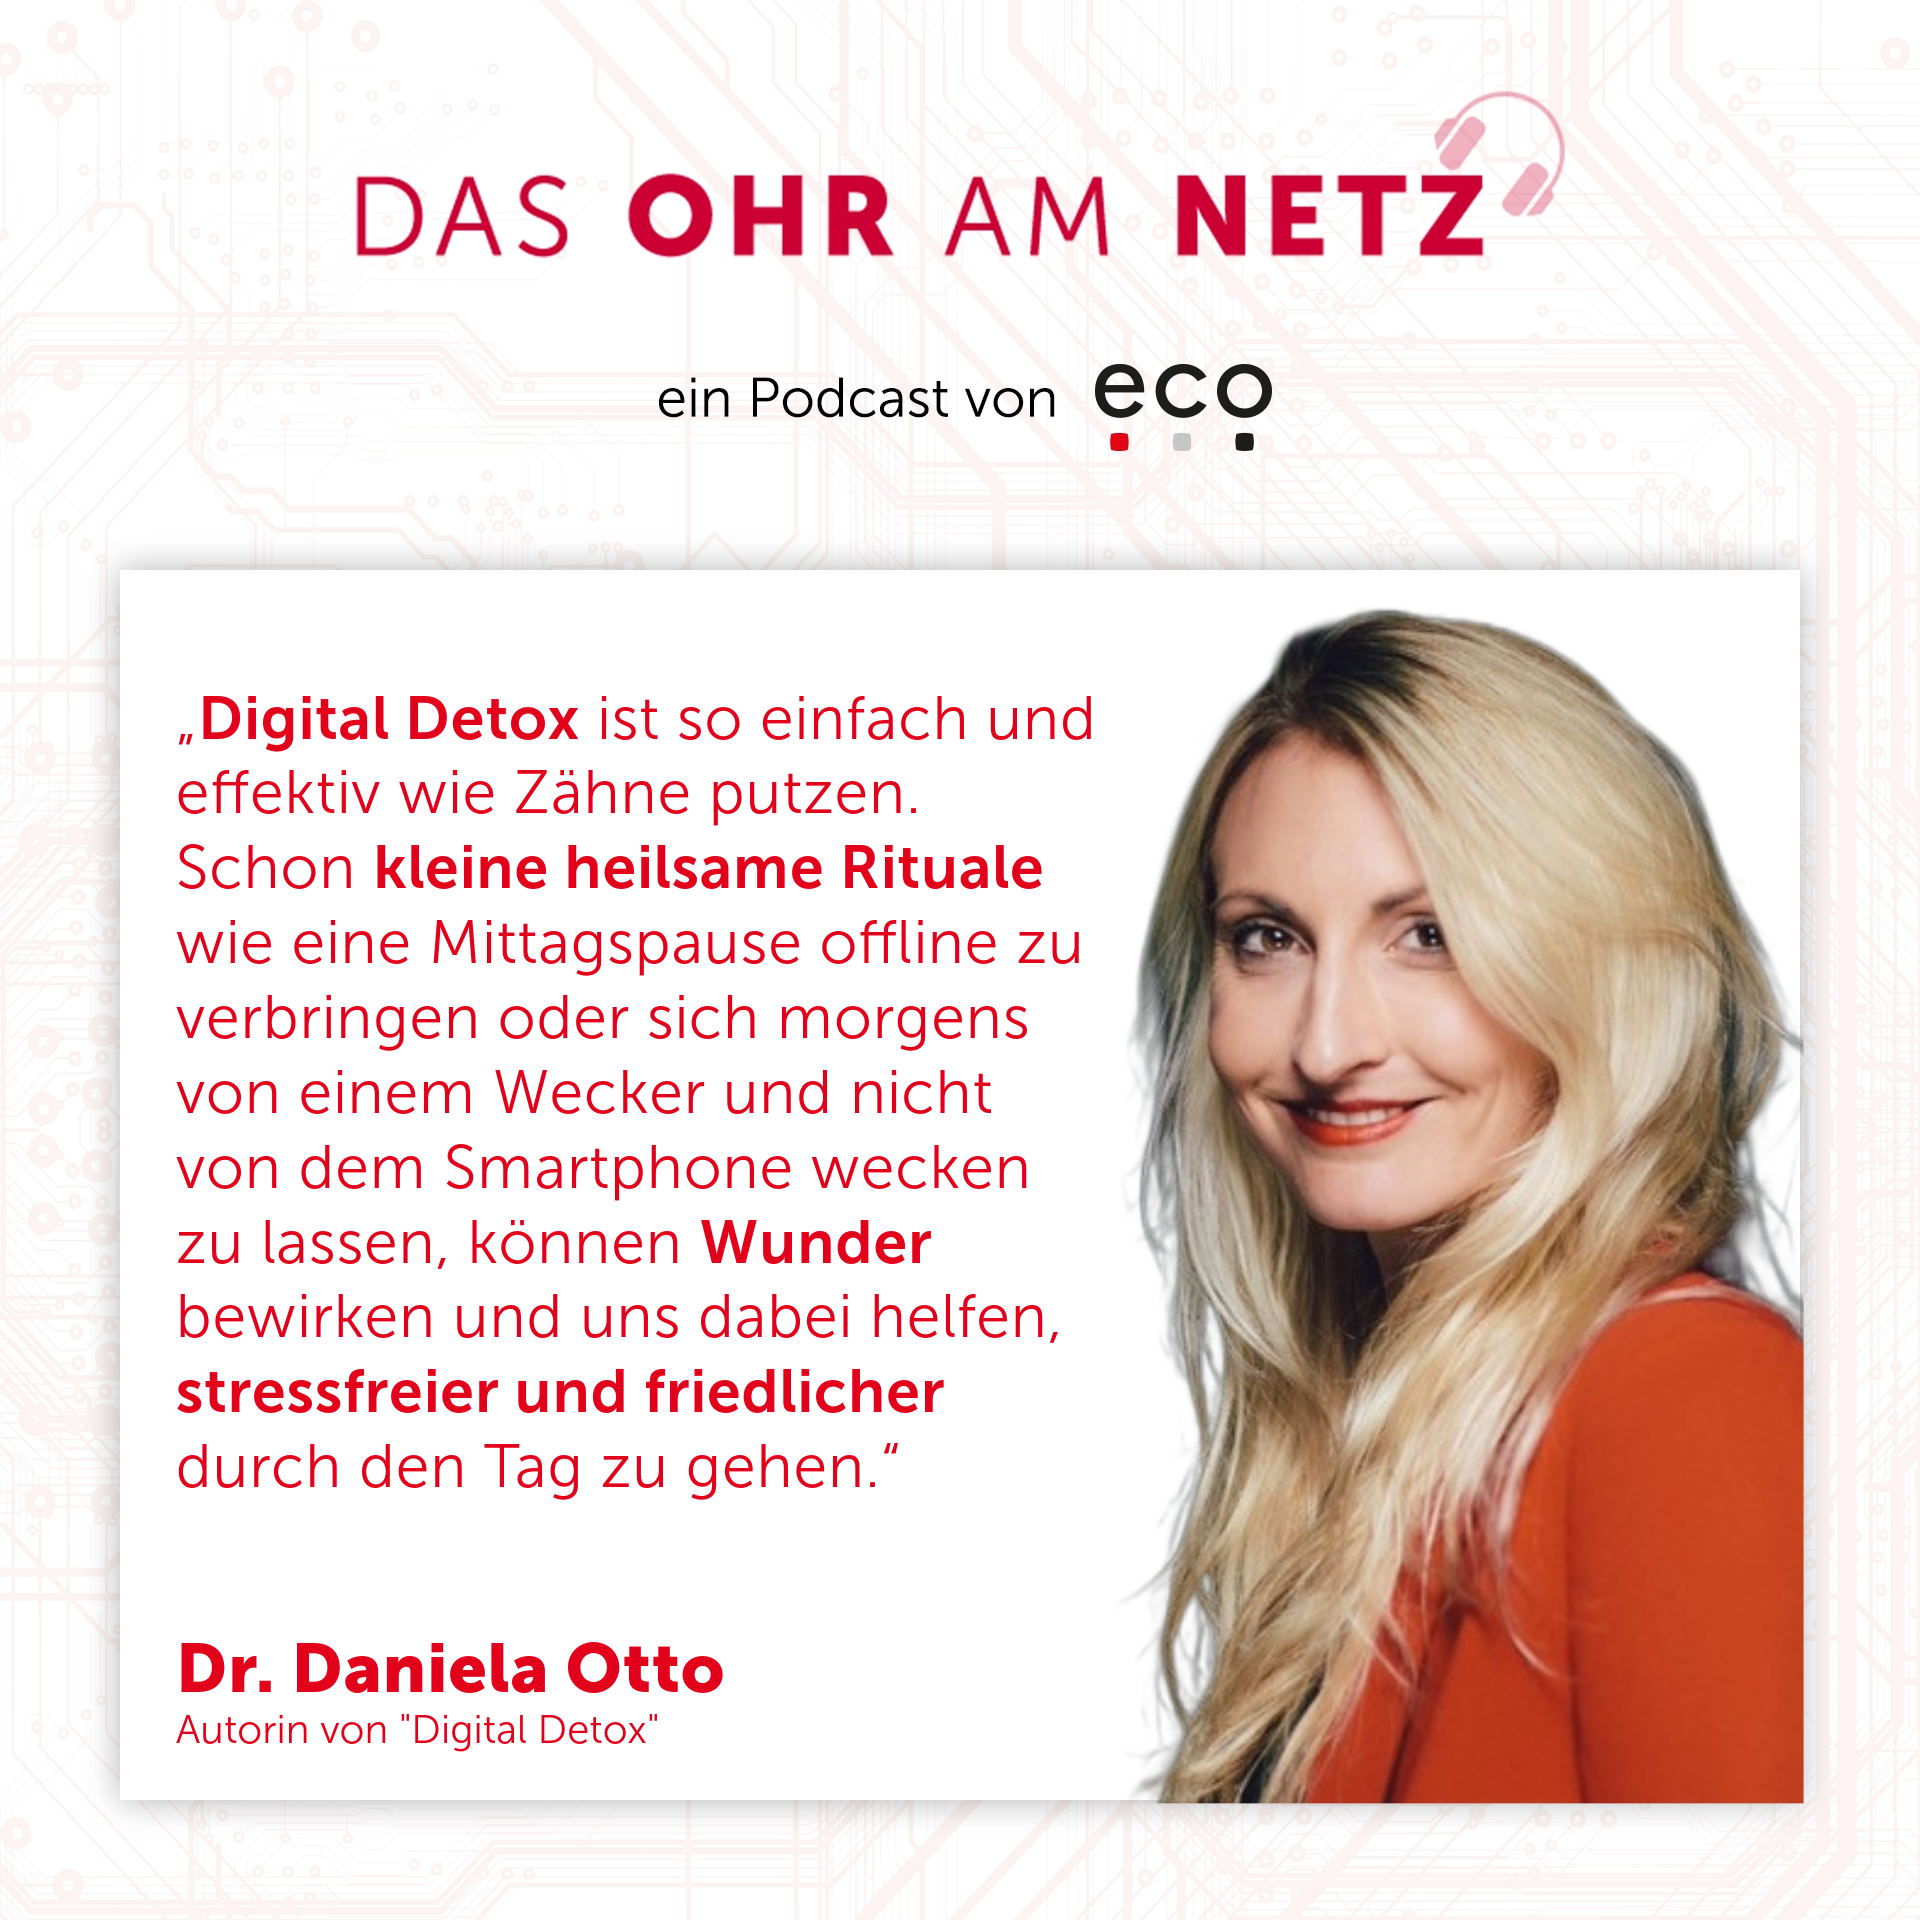 Das Ohr am Netz Podcast eco Dr. Daniela Otto